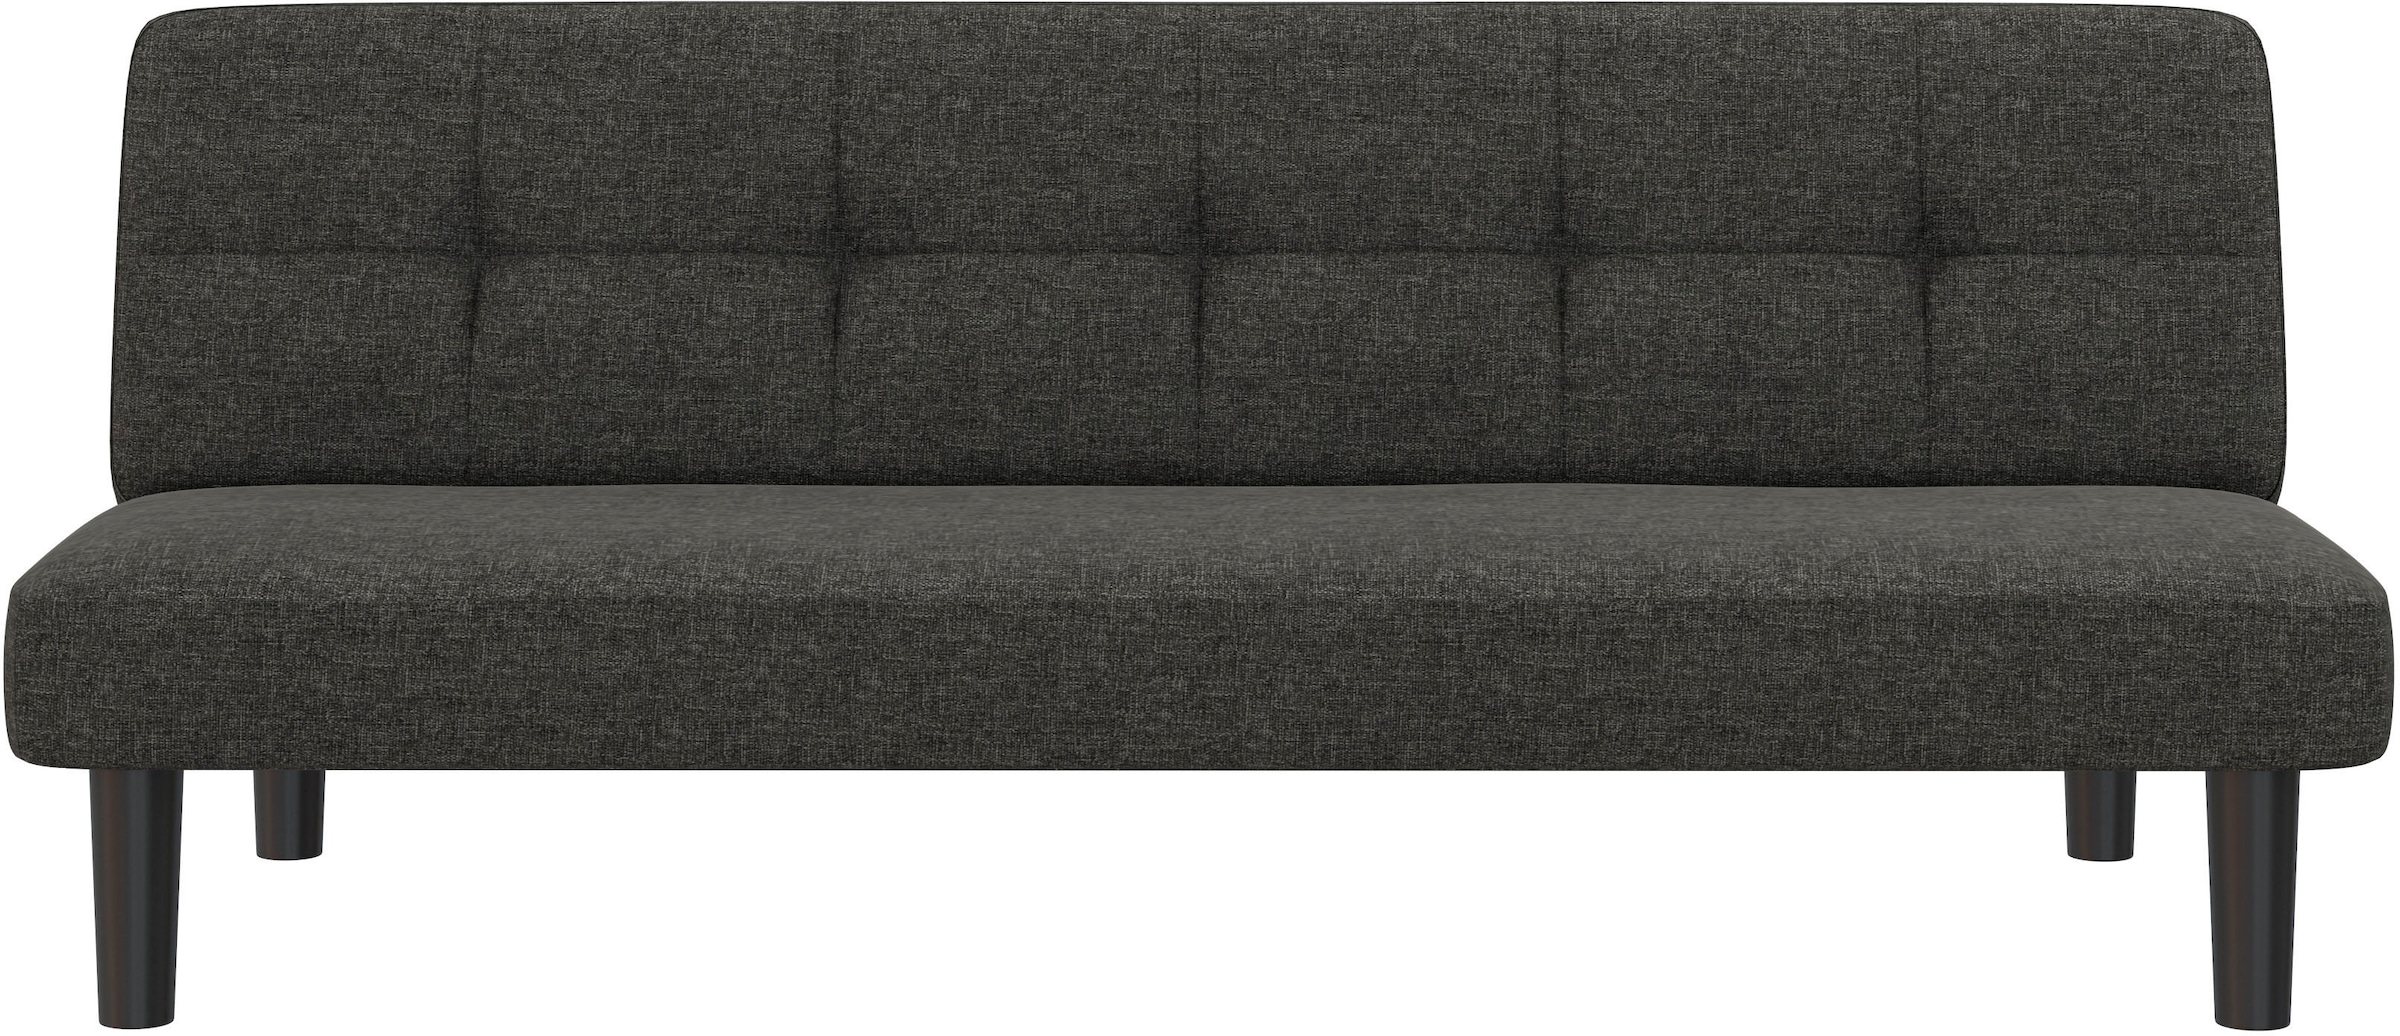 Dorel Home Schlafsofa »Alby«, verschiedene Farbvarianten erhältlich, Sitzhöhe 36 cm, Breite 90 cm